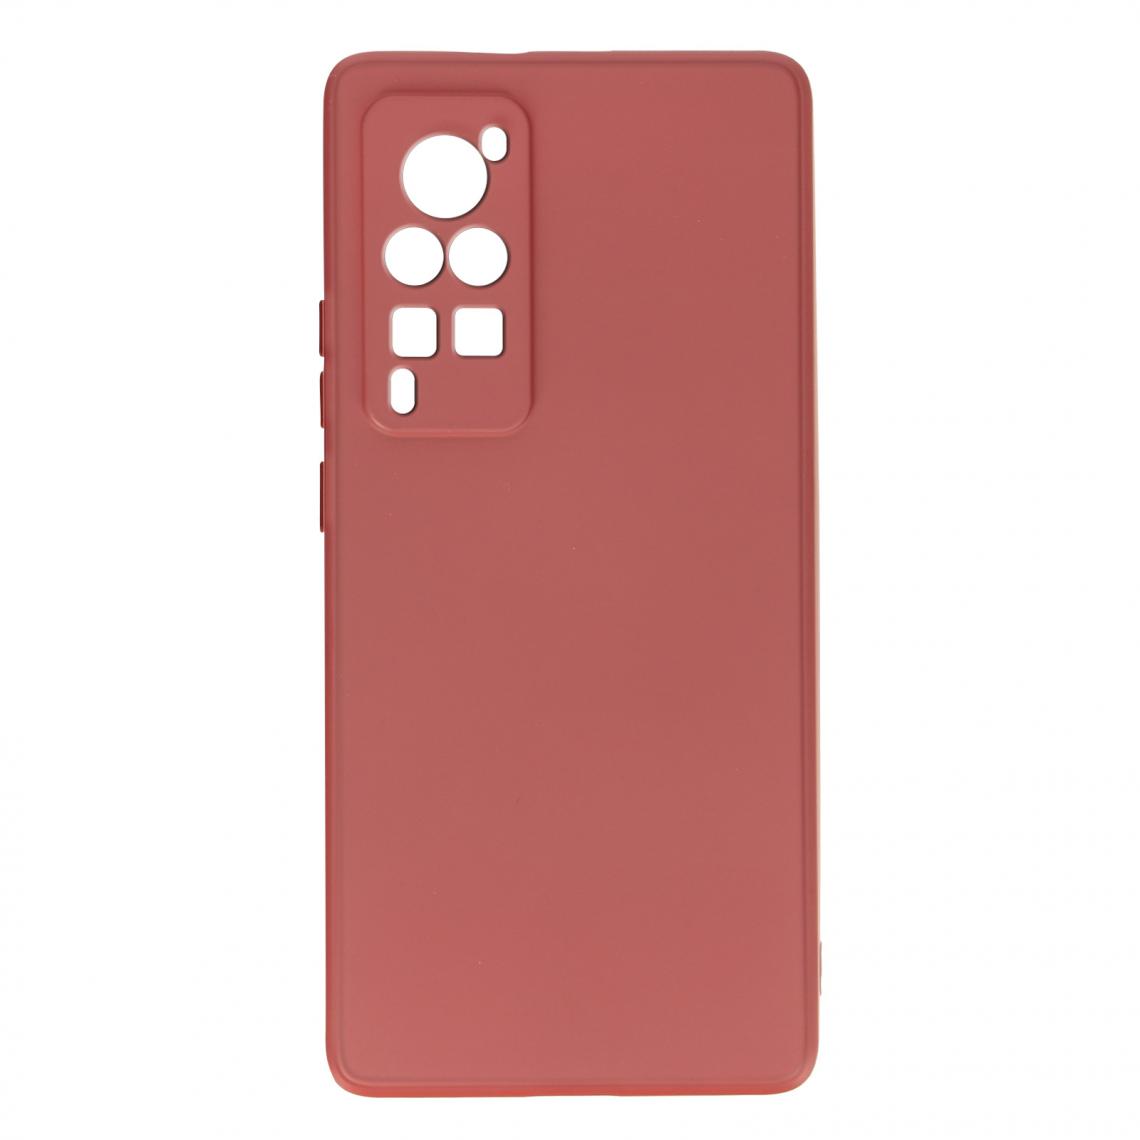 Avizar - Coque Vivo X60 Pro Silicone Souple Finition Soft Touch Fine Rose framboise - Coque, étui smartphone